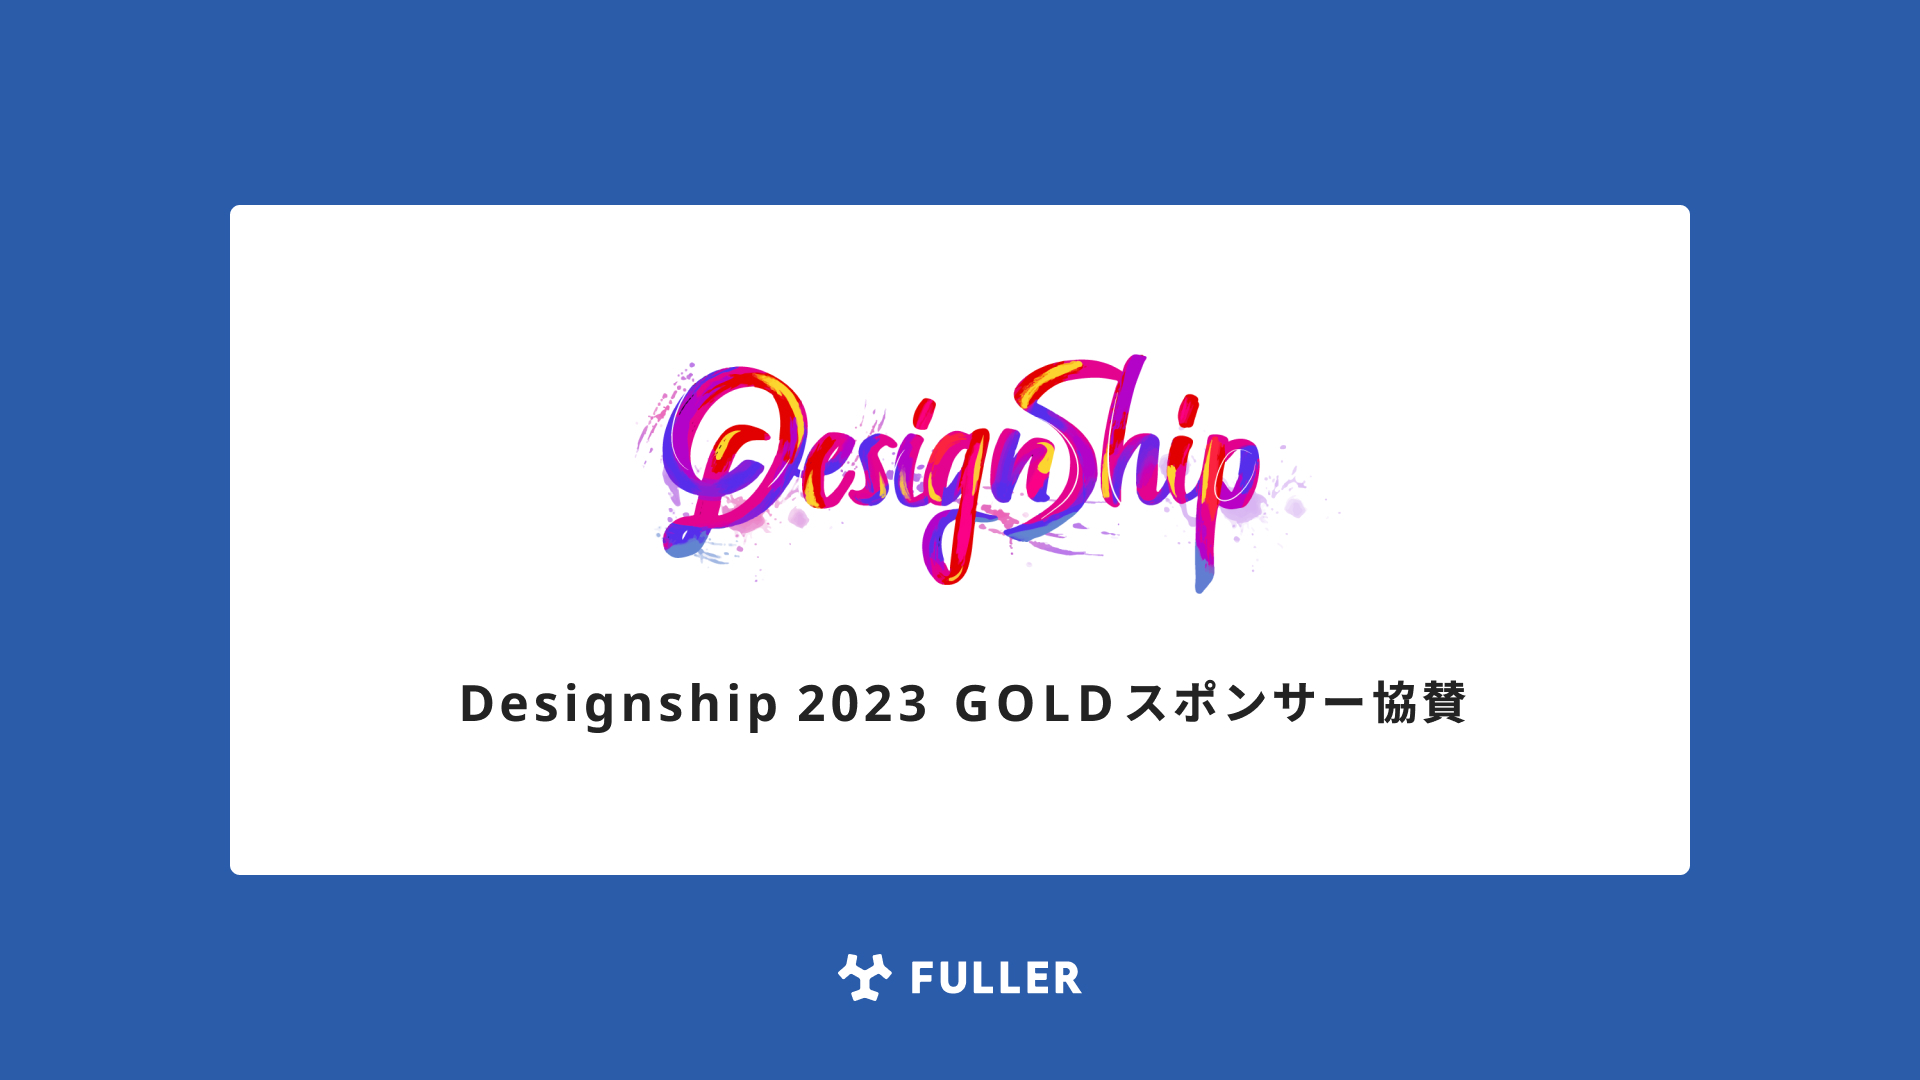 フラー、Designship 2023 にGOLDスポンサー協賛